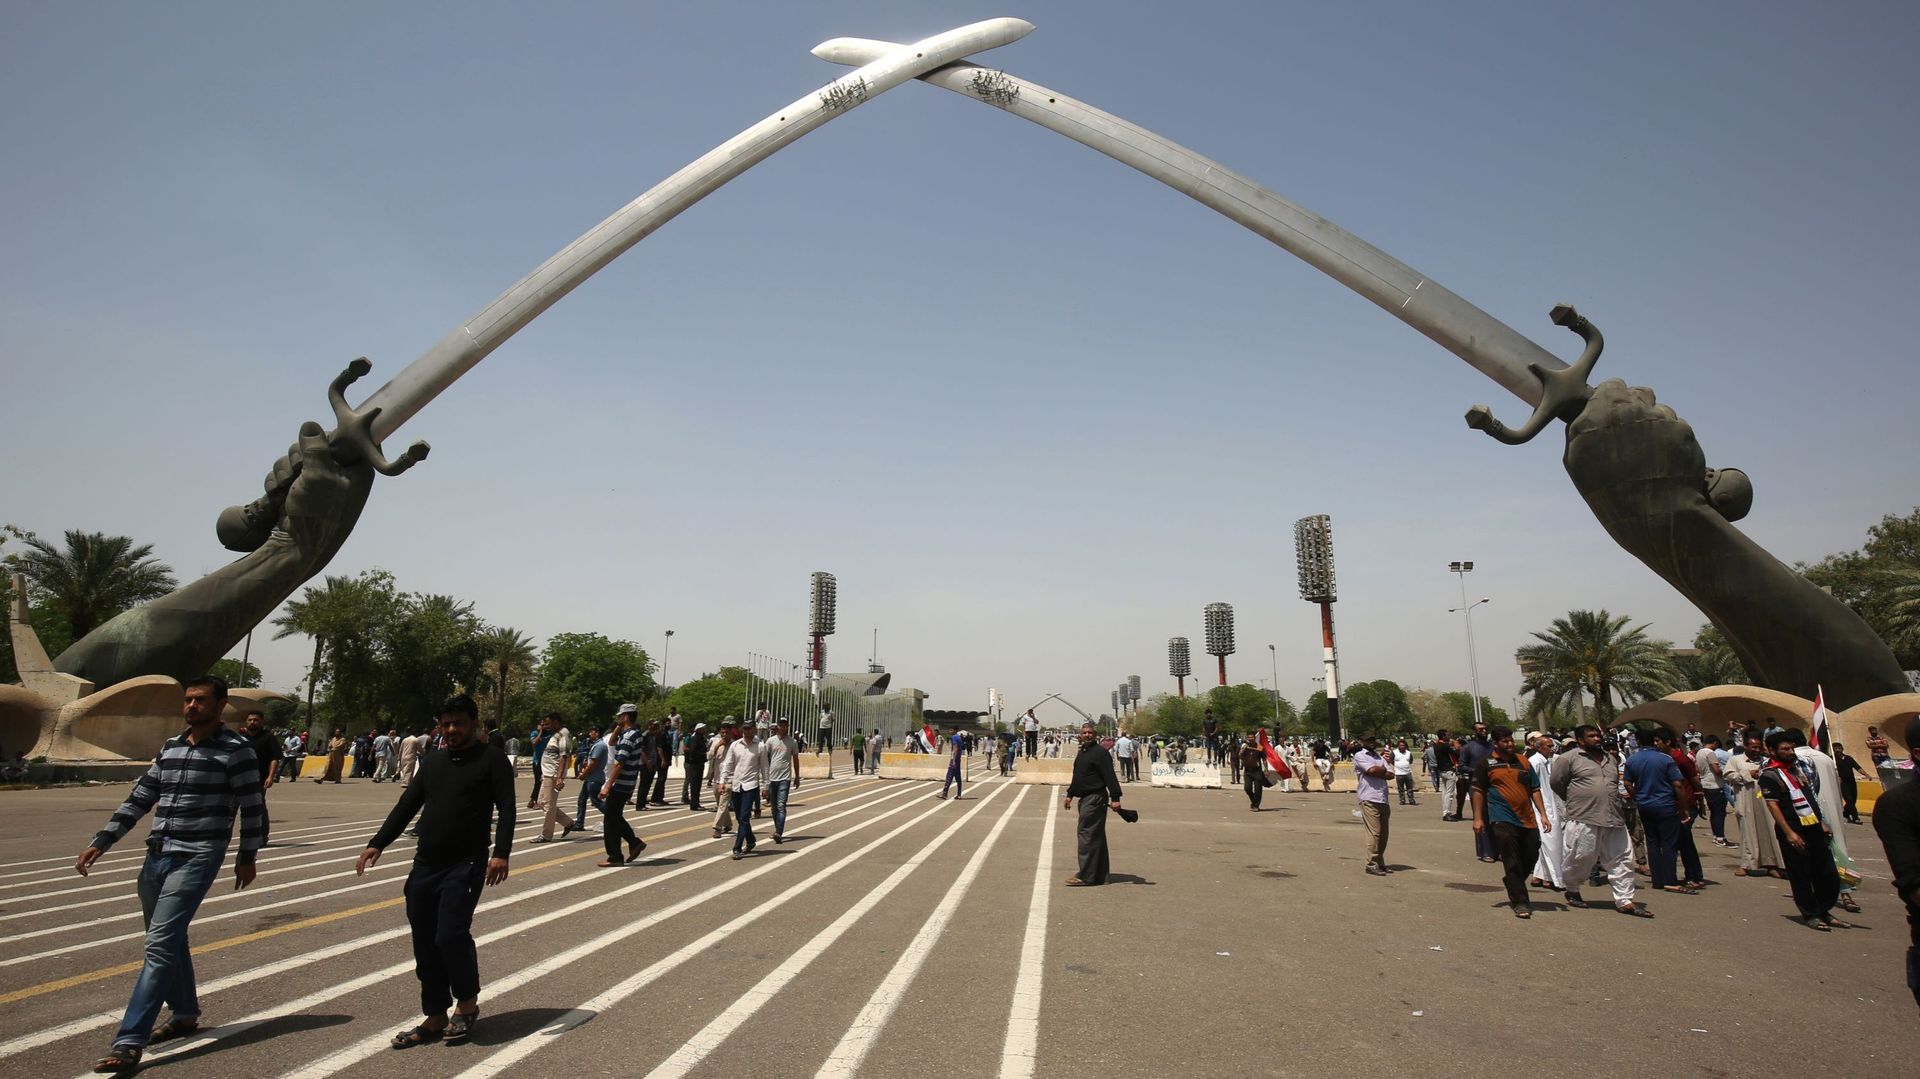 Tous les visiteurs font une halte sous les arches de triomphe constitués de deux imposants sabres croisés, lieu des parades militaires du temps de l'ex-président Saddam Hussein.